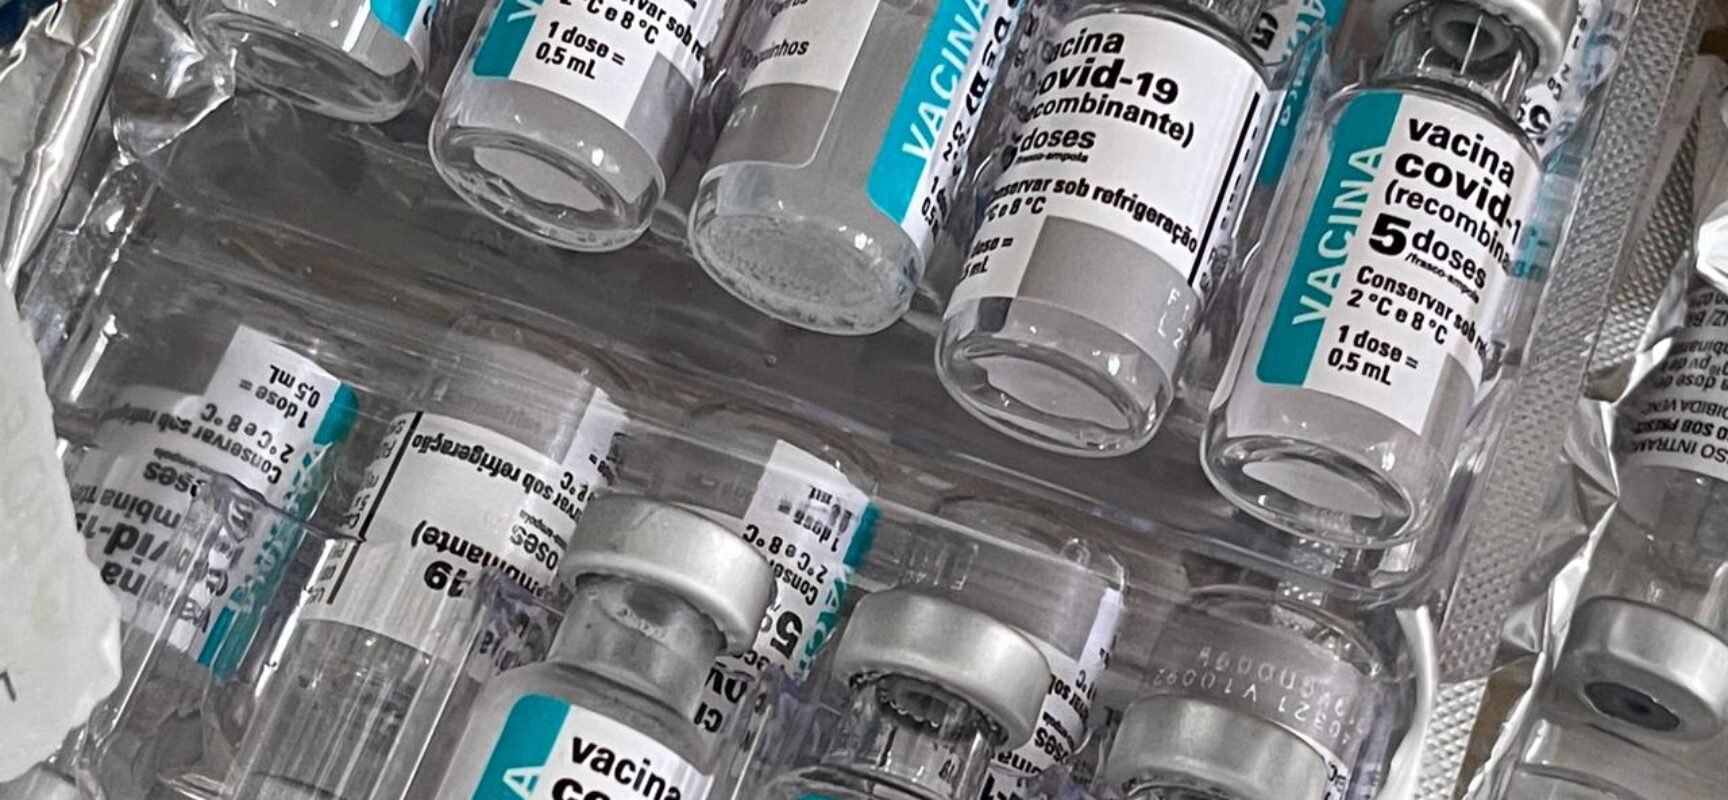 Vídeo sobre falsa vacinação contra Covid-19 em Ilhéus é fake, informa Prefeitura